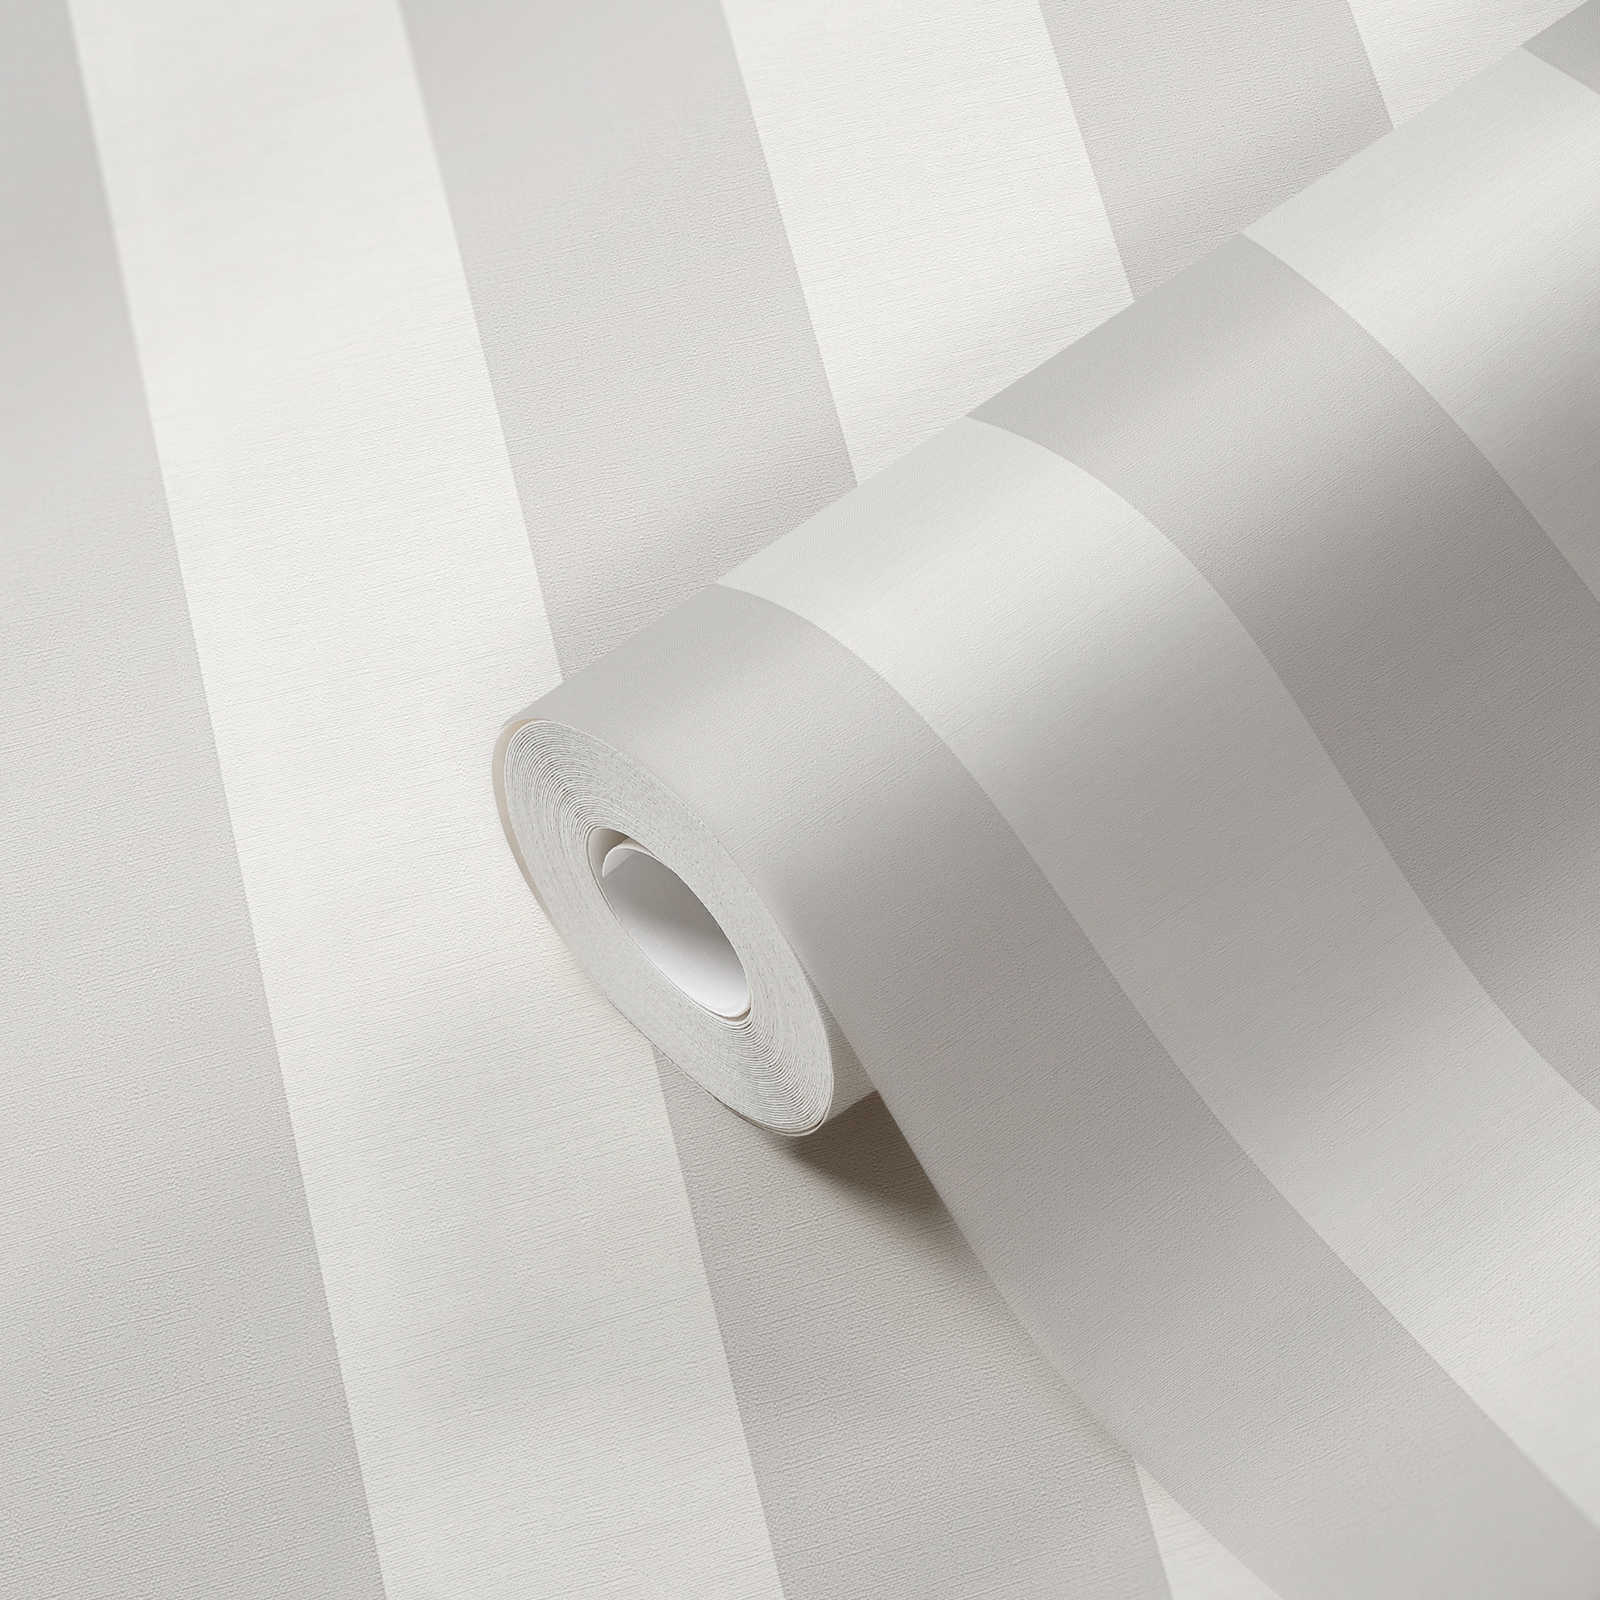             Papier peint à rayures en bloc avec aspect textile pour un design jeune - gris, blanc
        